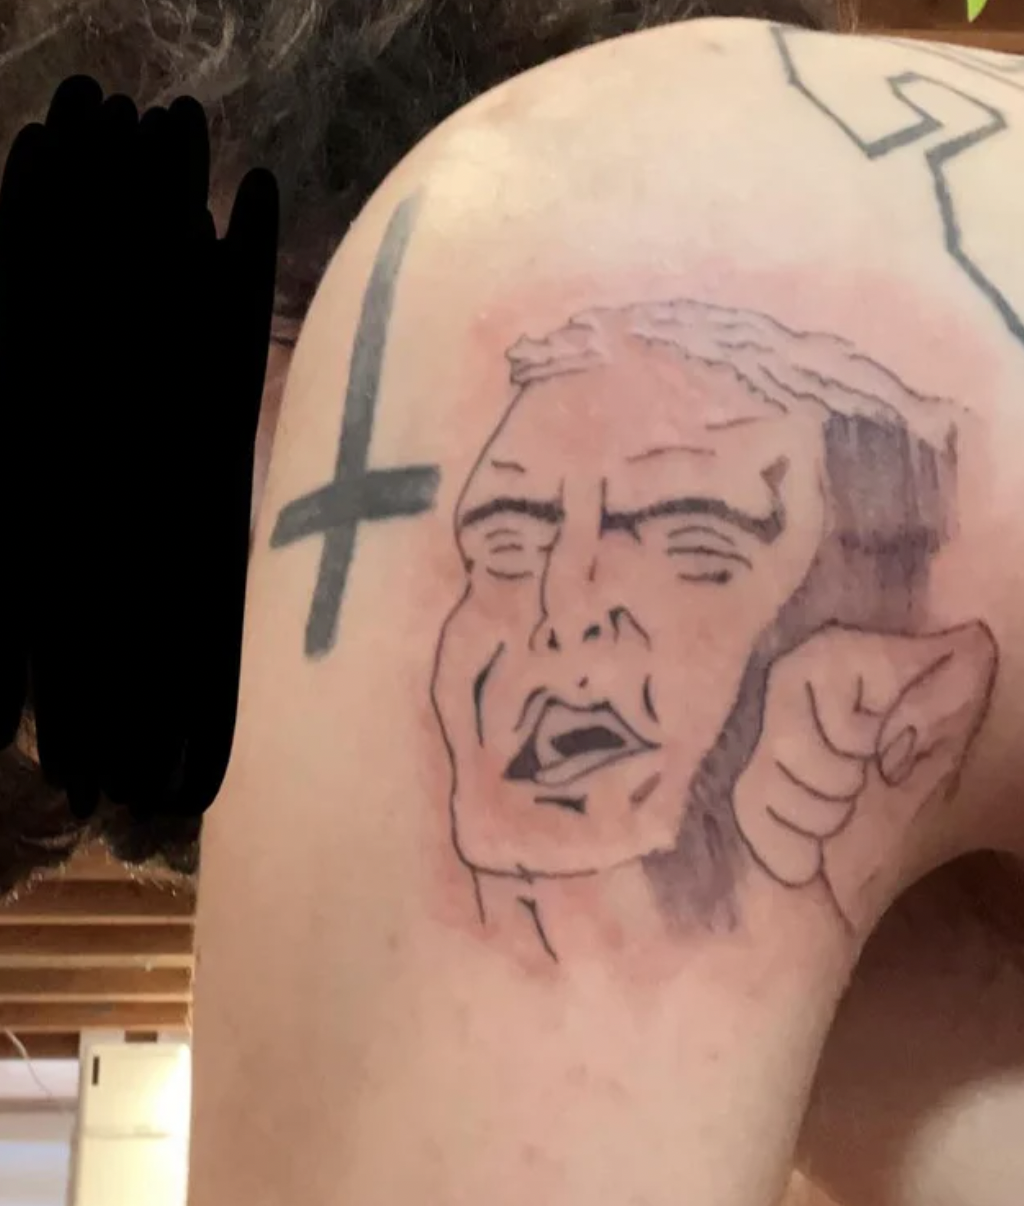 Awful tattoos - tattoo